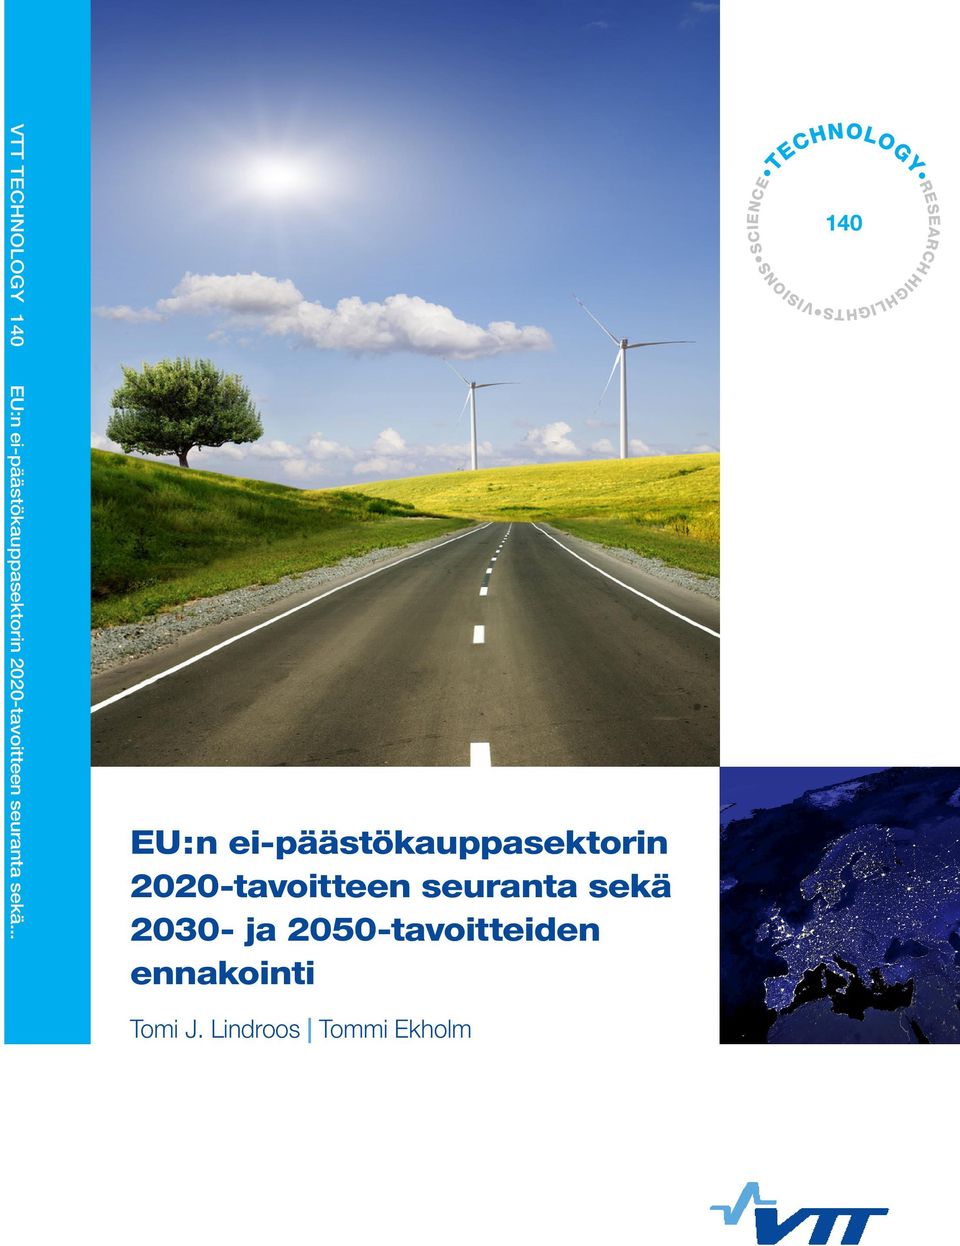 .. EU:n ei-päästökauppasektorin 2020-tavoitteen seuranta sekä